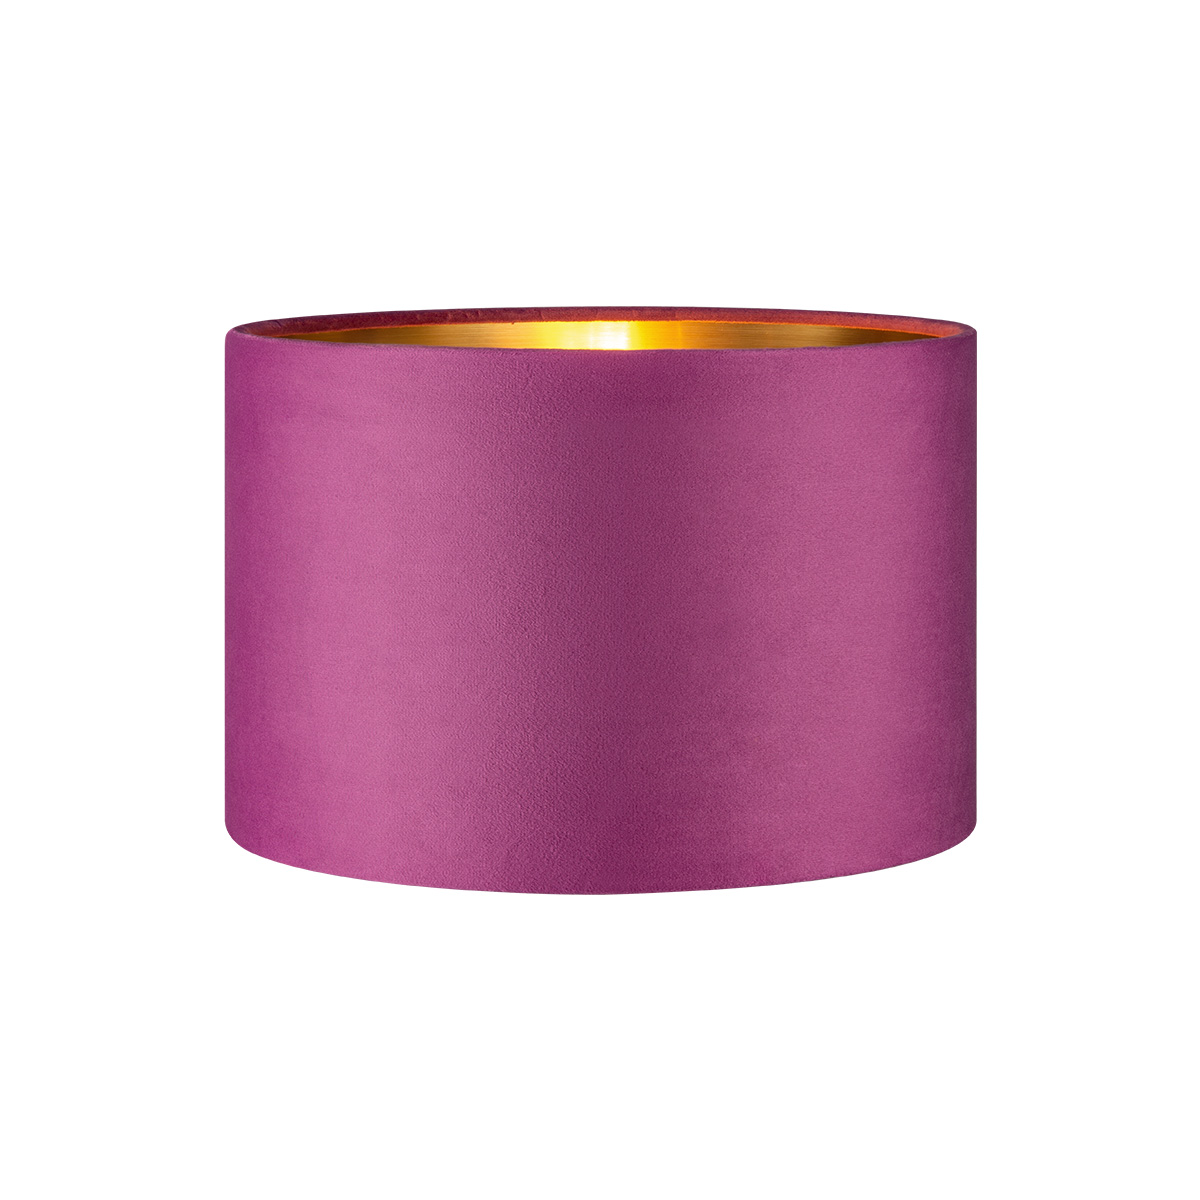 Tangla lighting - TLS7564-30PP - Lampshade - velvet - purple - diameter 30cm - E27